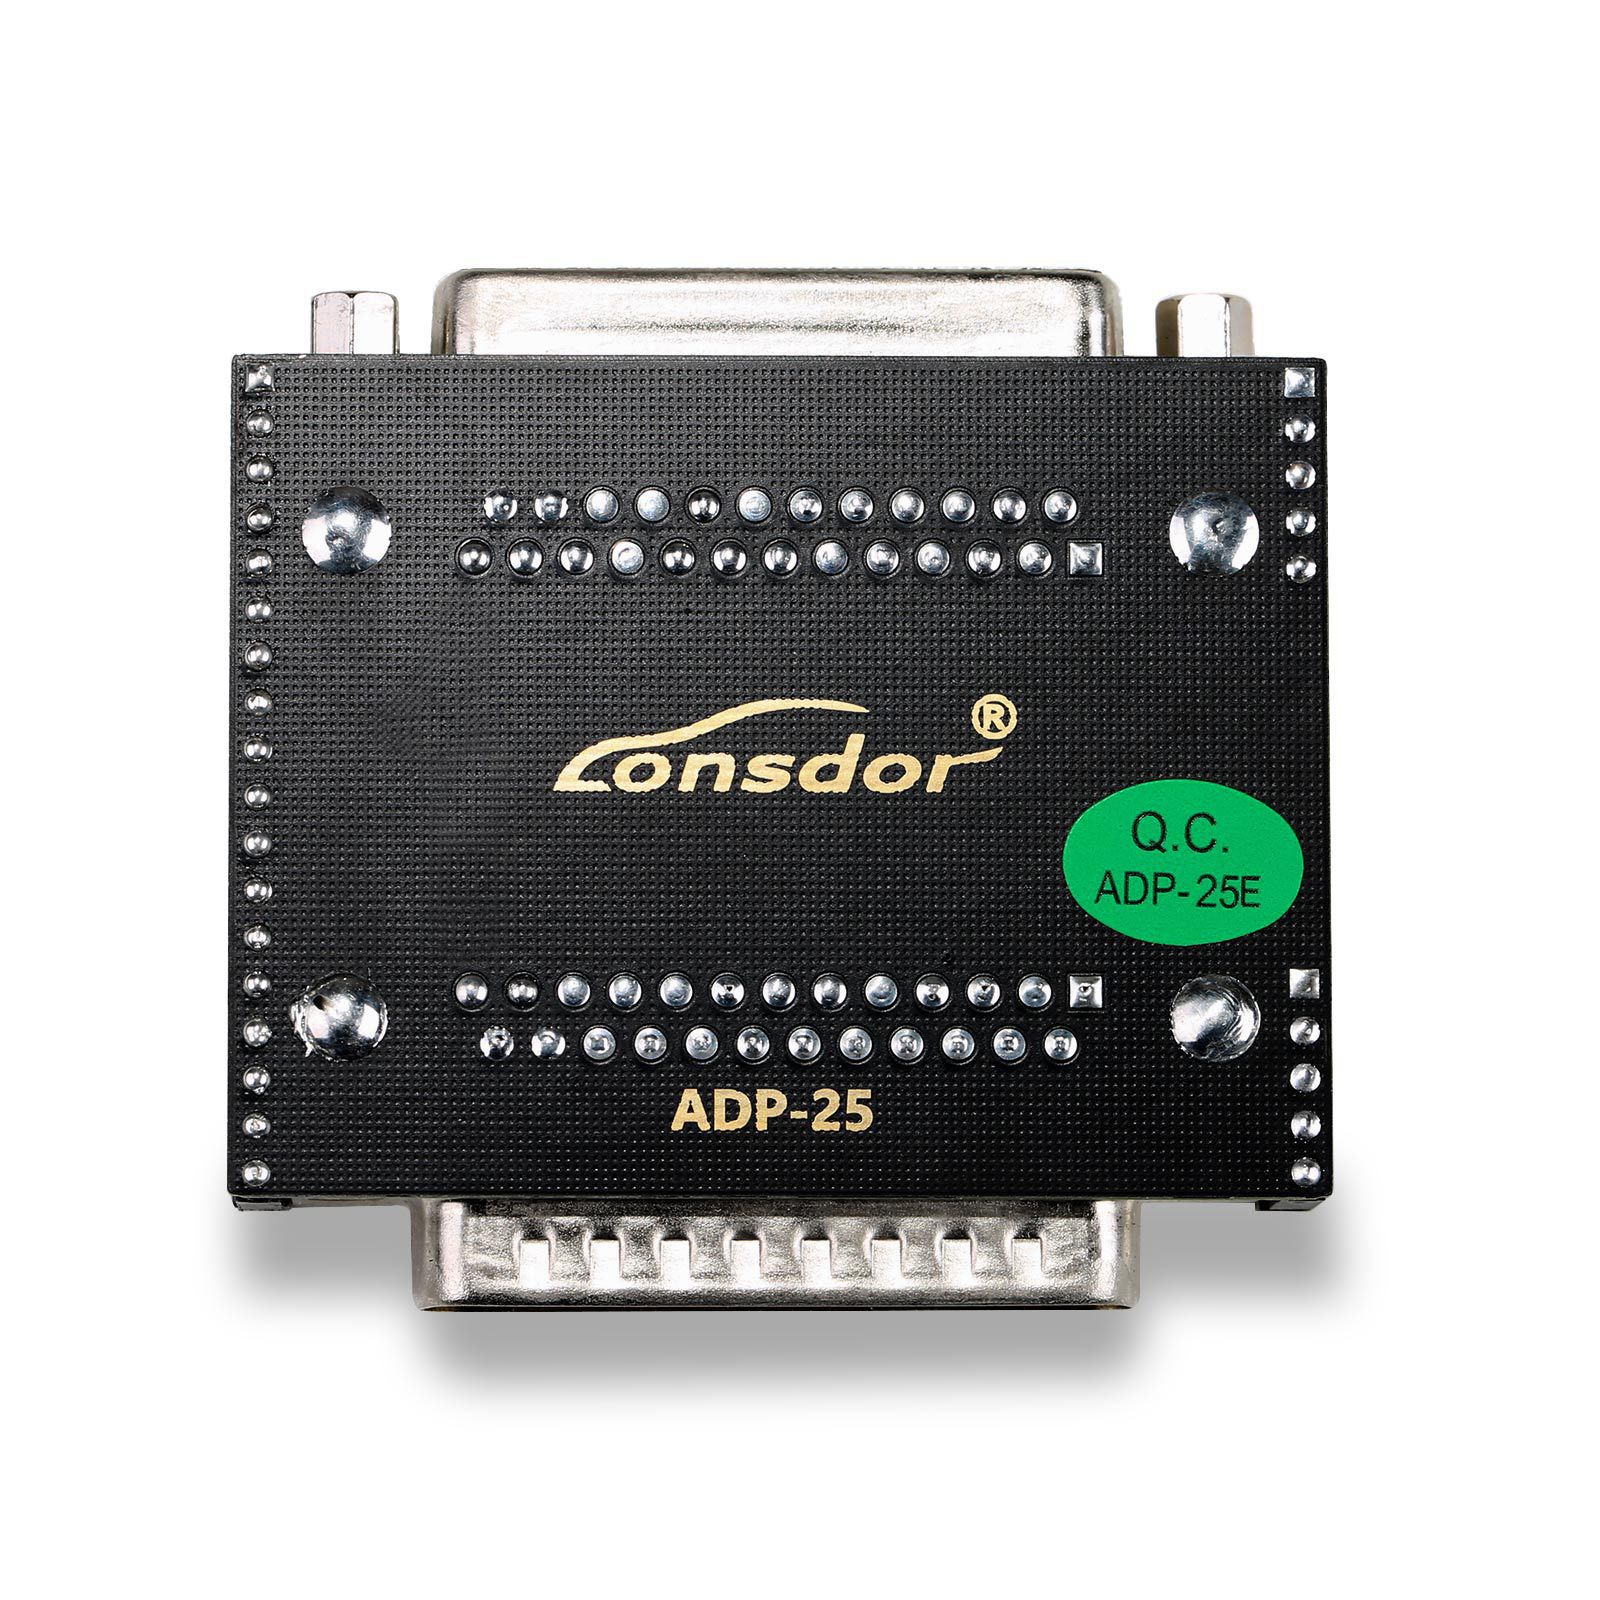 Lonsdar Super ADP 8A/4A Adapter Plus Lonsdar LKE Smart Key Emulator 5 in 1 Arbeit mit Lonsdar K518ISE K518S